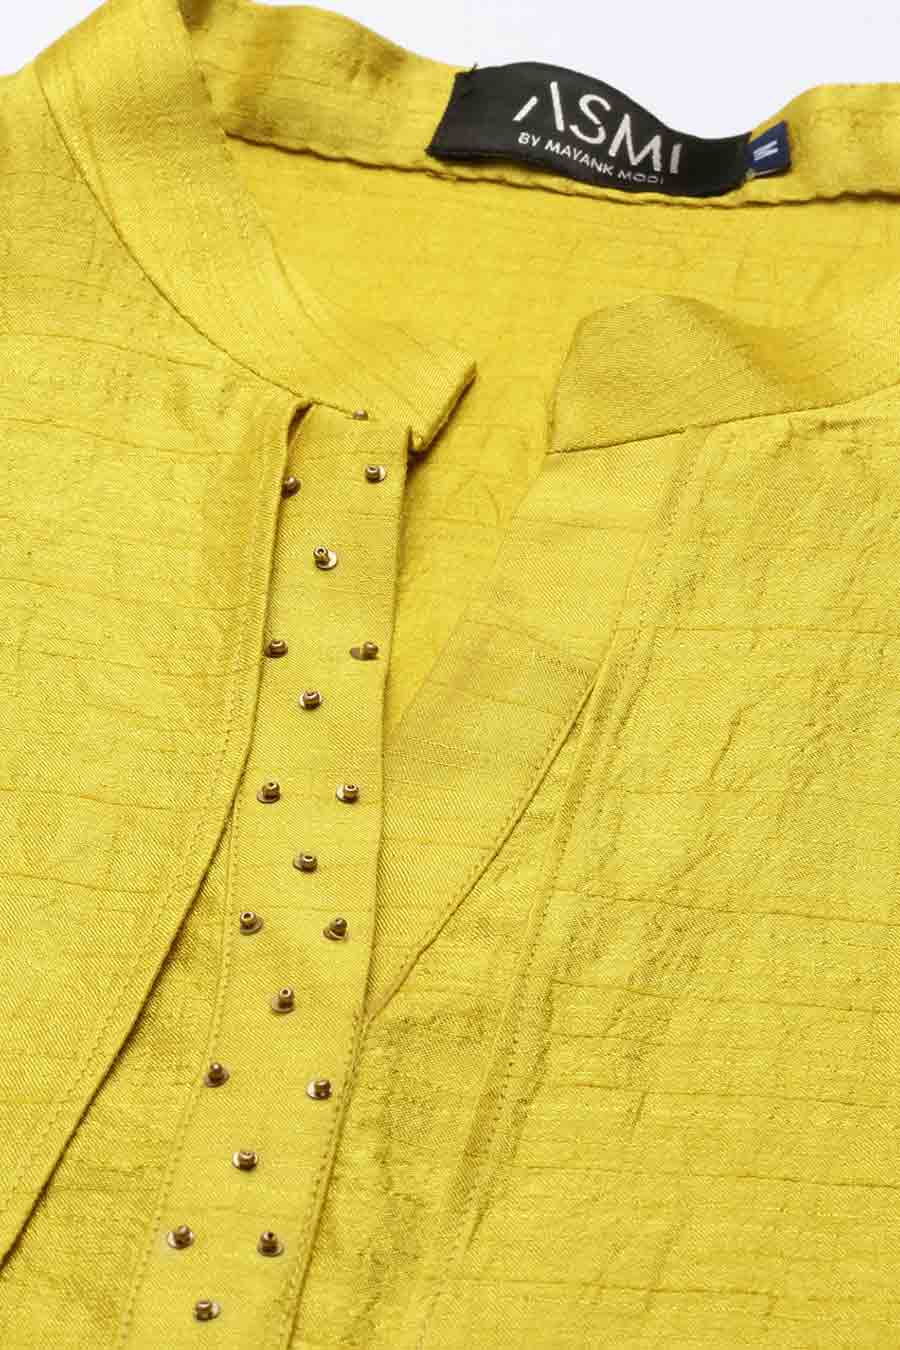 Yellow Silk Double Layered Dress